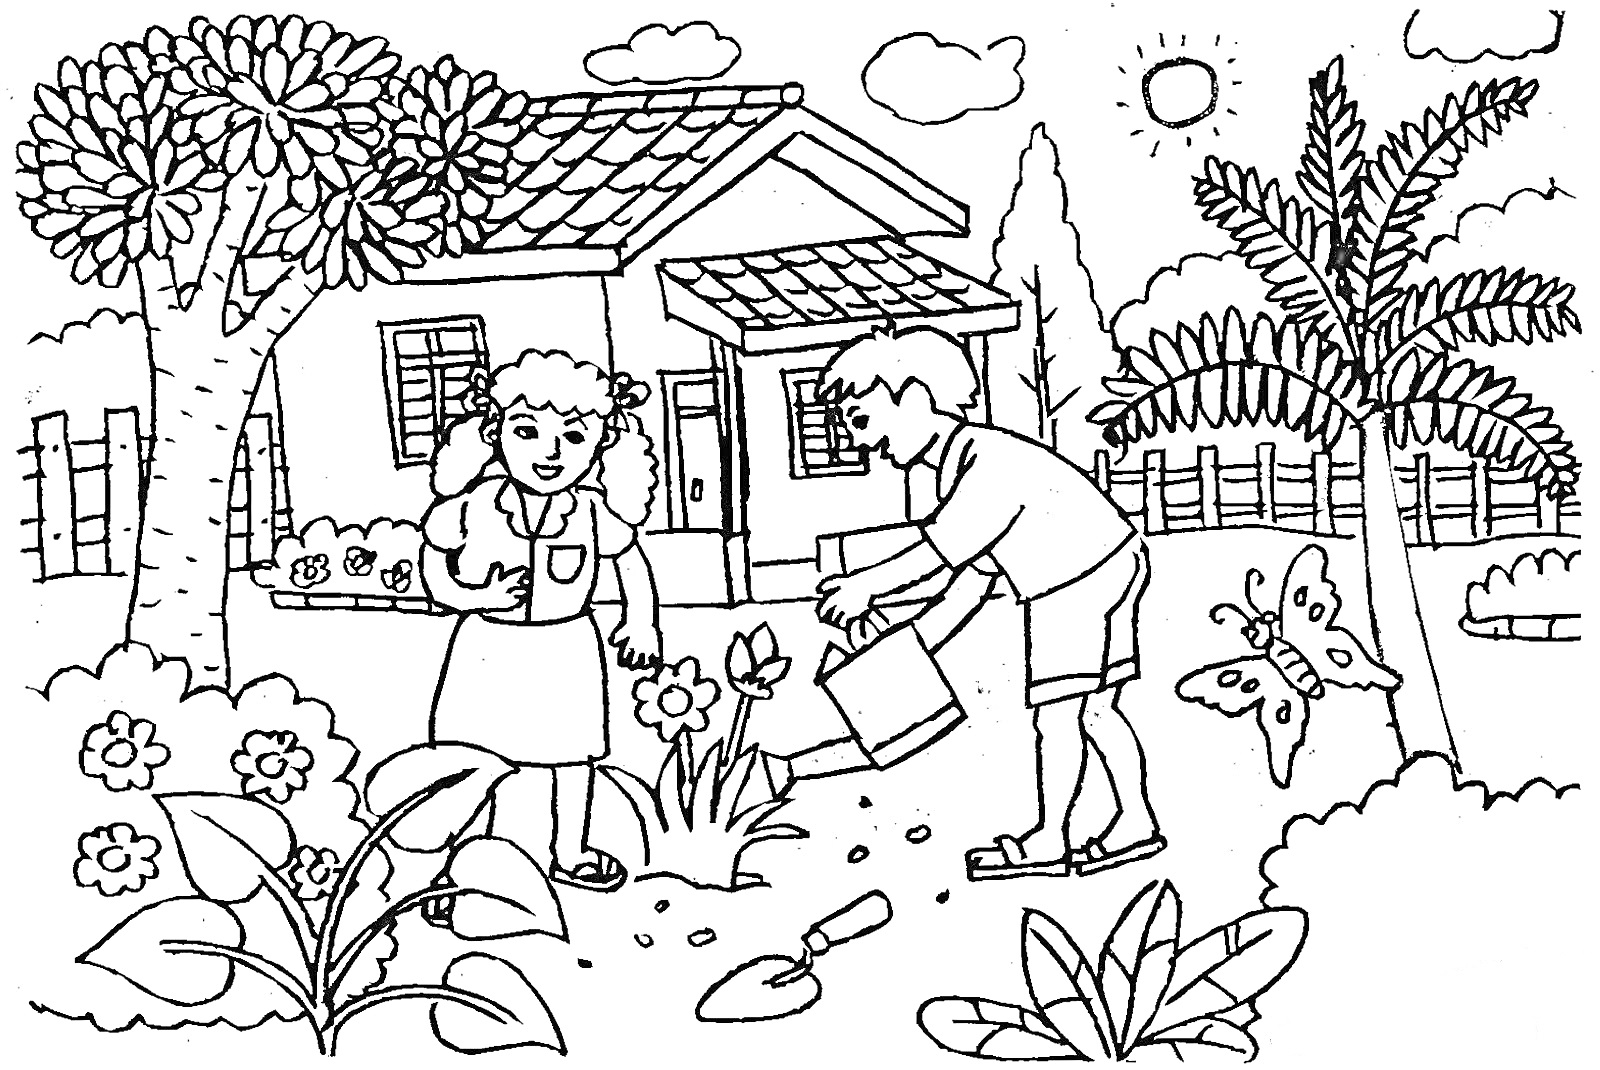 Дети в саду перед домом, деревья, кустарники, цветы, забор, солнце, облака, бабочка, лейка, лопата